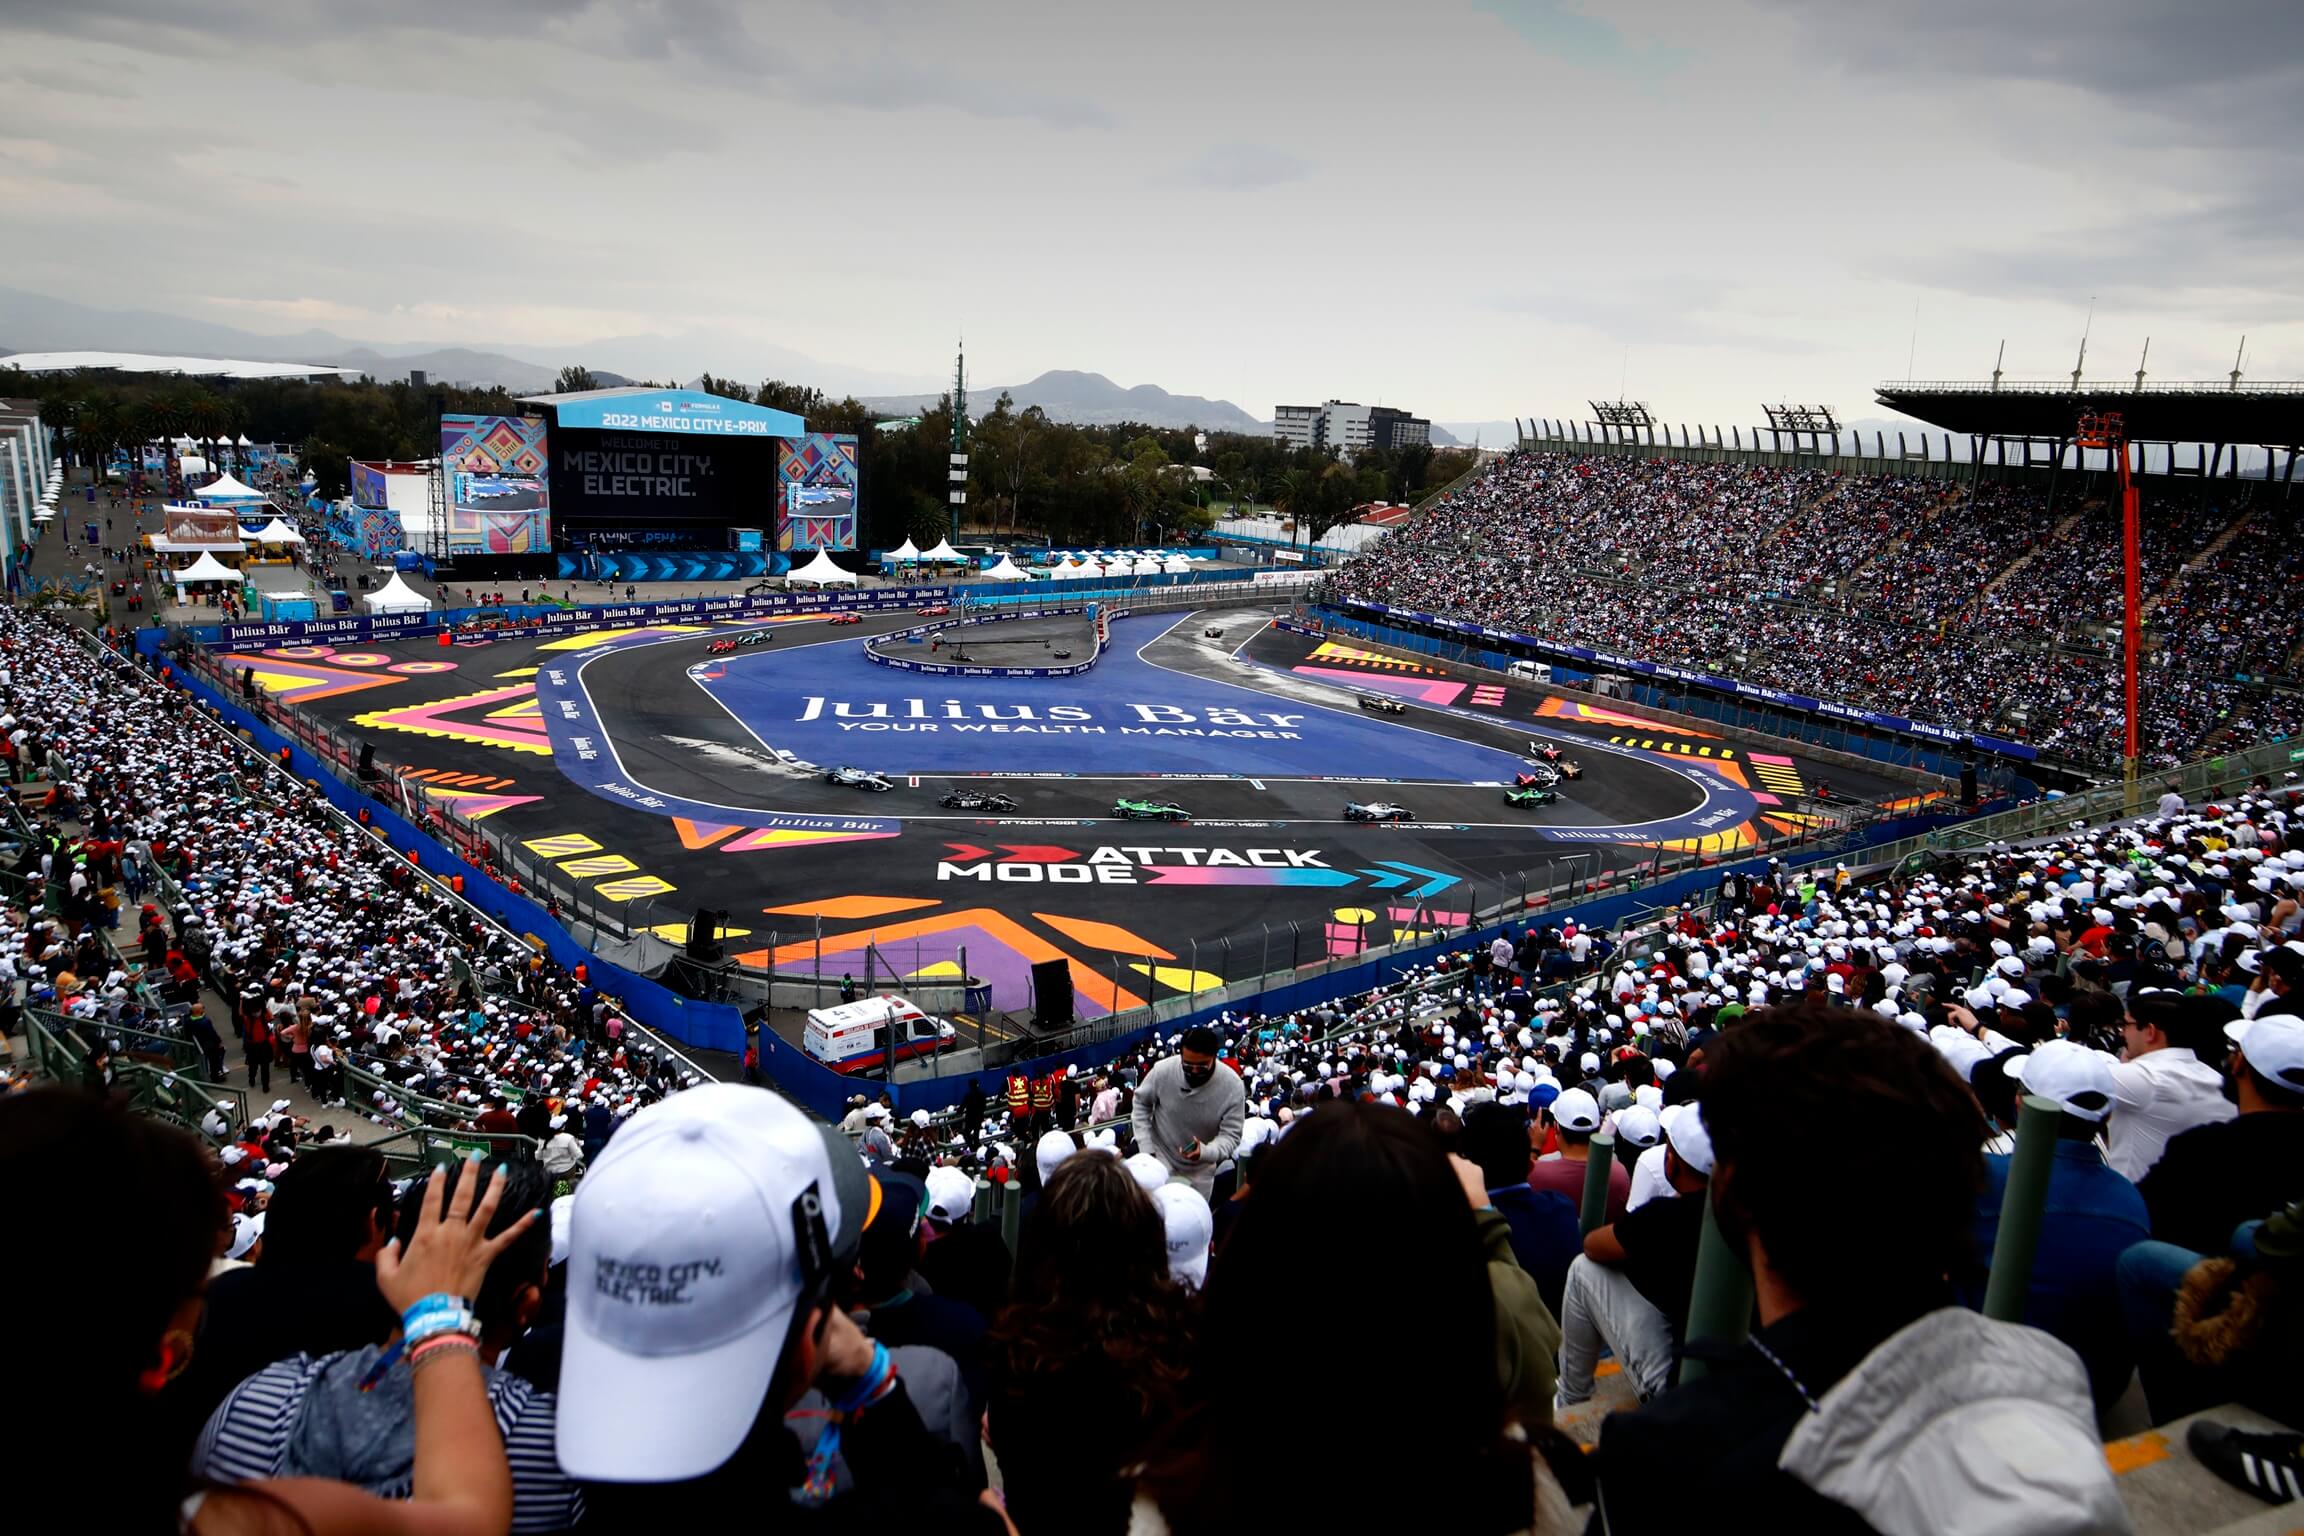 "Saudi wird nicht das erste Rennen sein" - Formel-E-Saisonauftakt 2023 in Mexiko-Stadt?